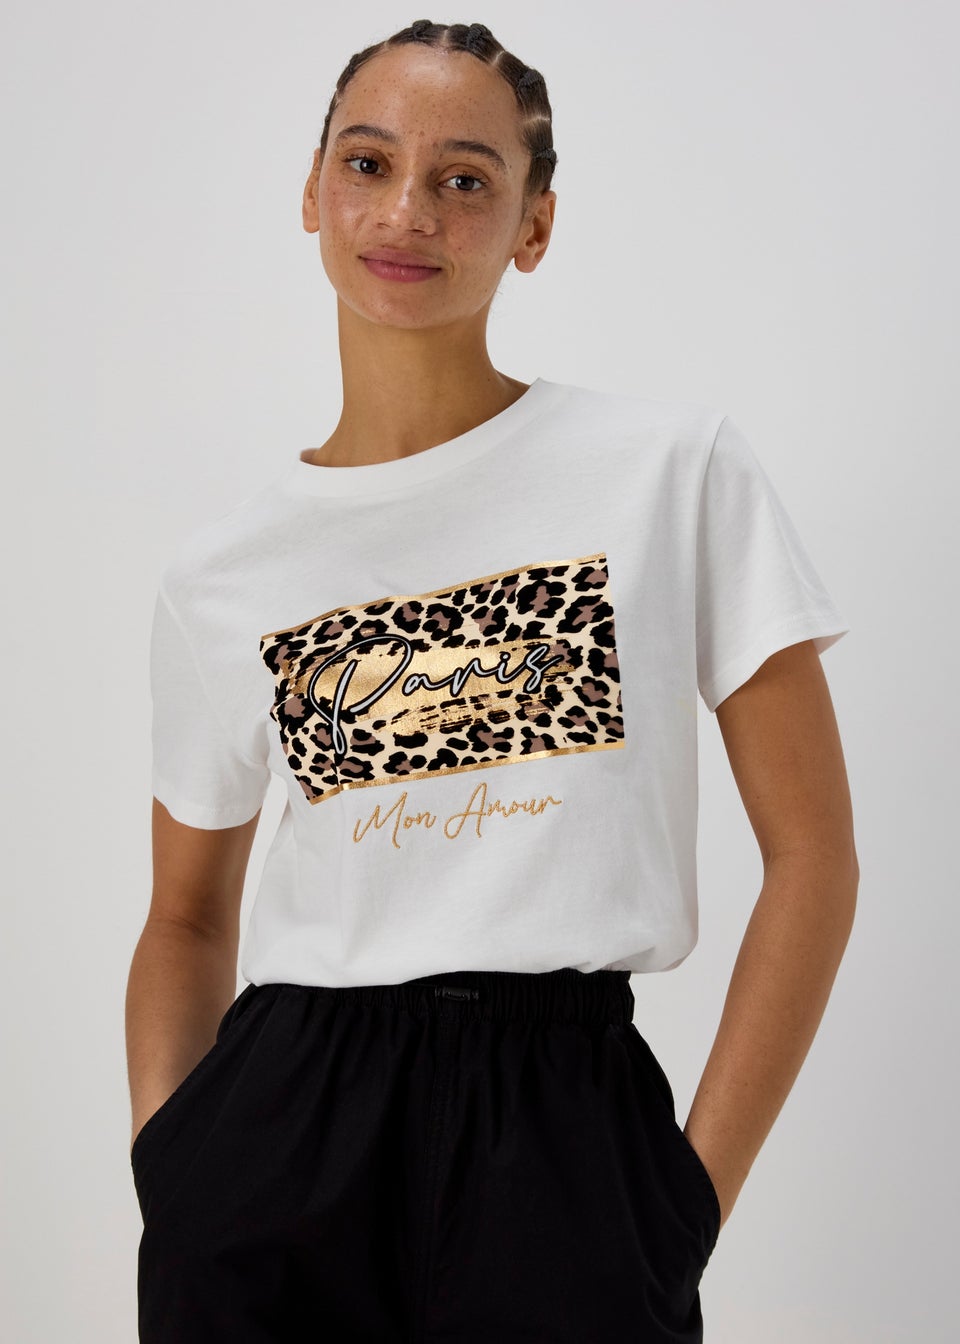 Кремовая футболка с рисунком Leopard Paris Papaya, белый